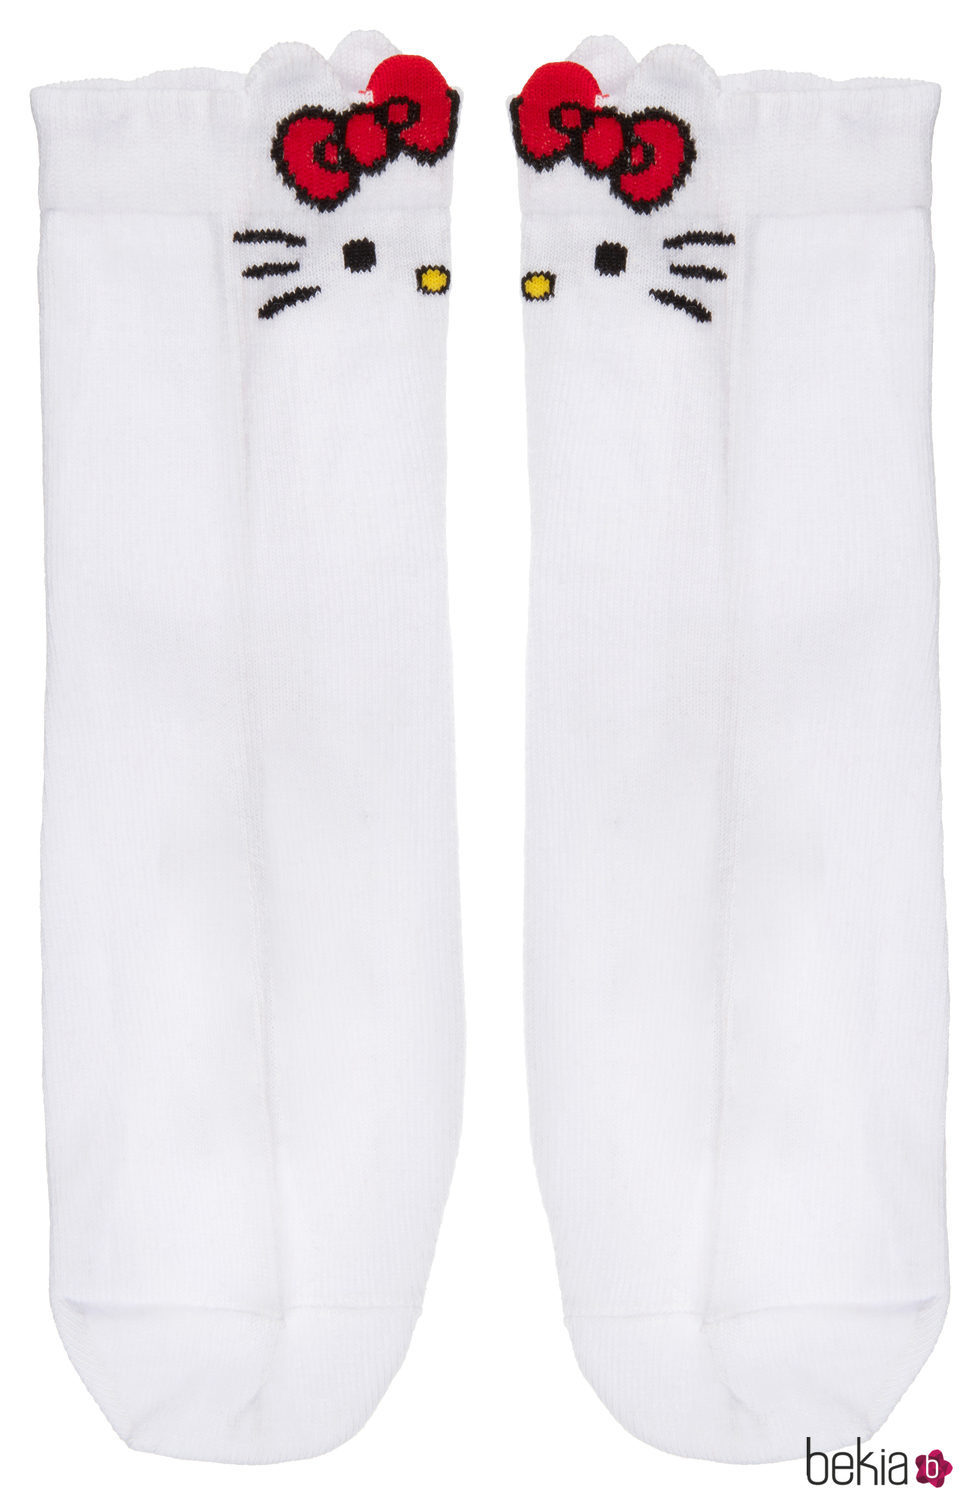 Calcetines blancos de la colección de Hello Kitty para Asos de otoño/invierno 2017/2018